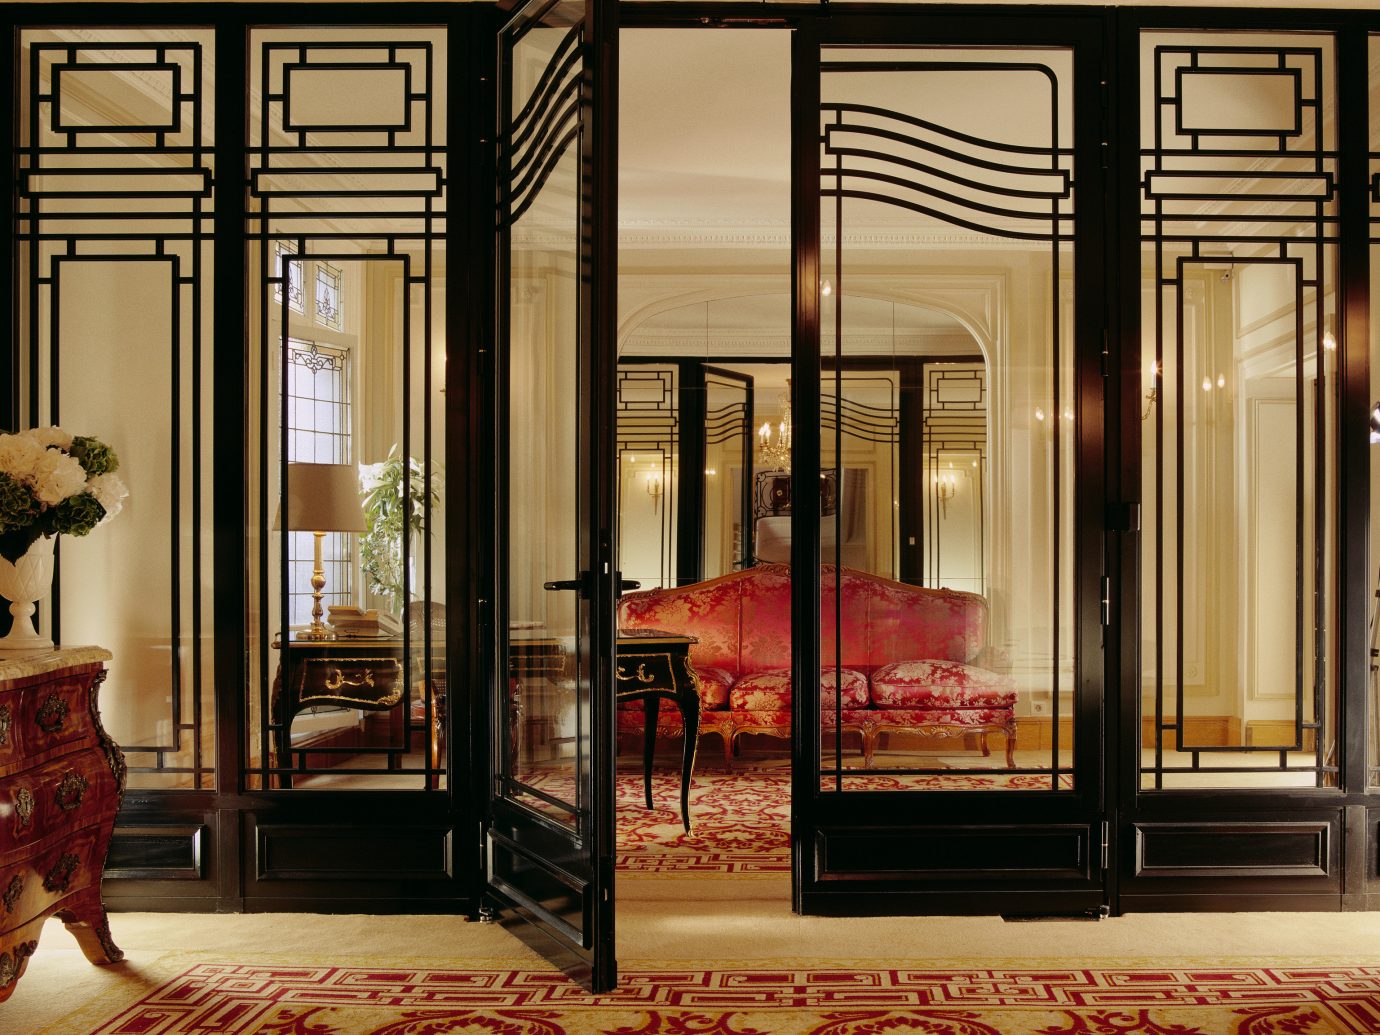 Hotels Luxury Travel floor indoor room window Living furniture interior design door Lobby flooring